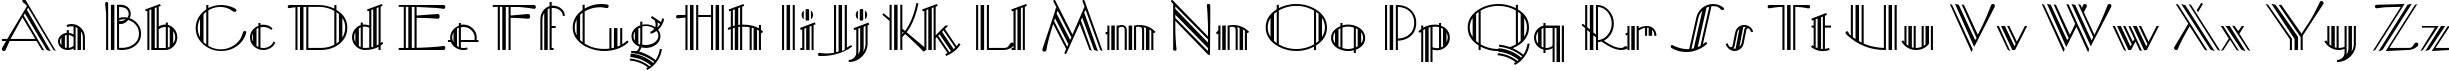 Пример написания английского алфавита шрифтом Mustang Deco